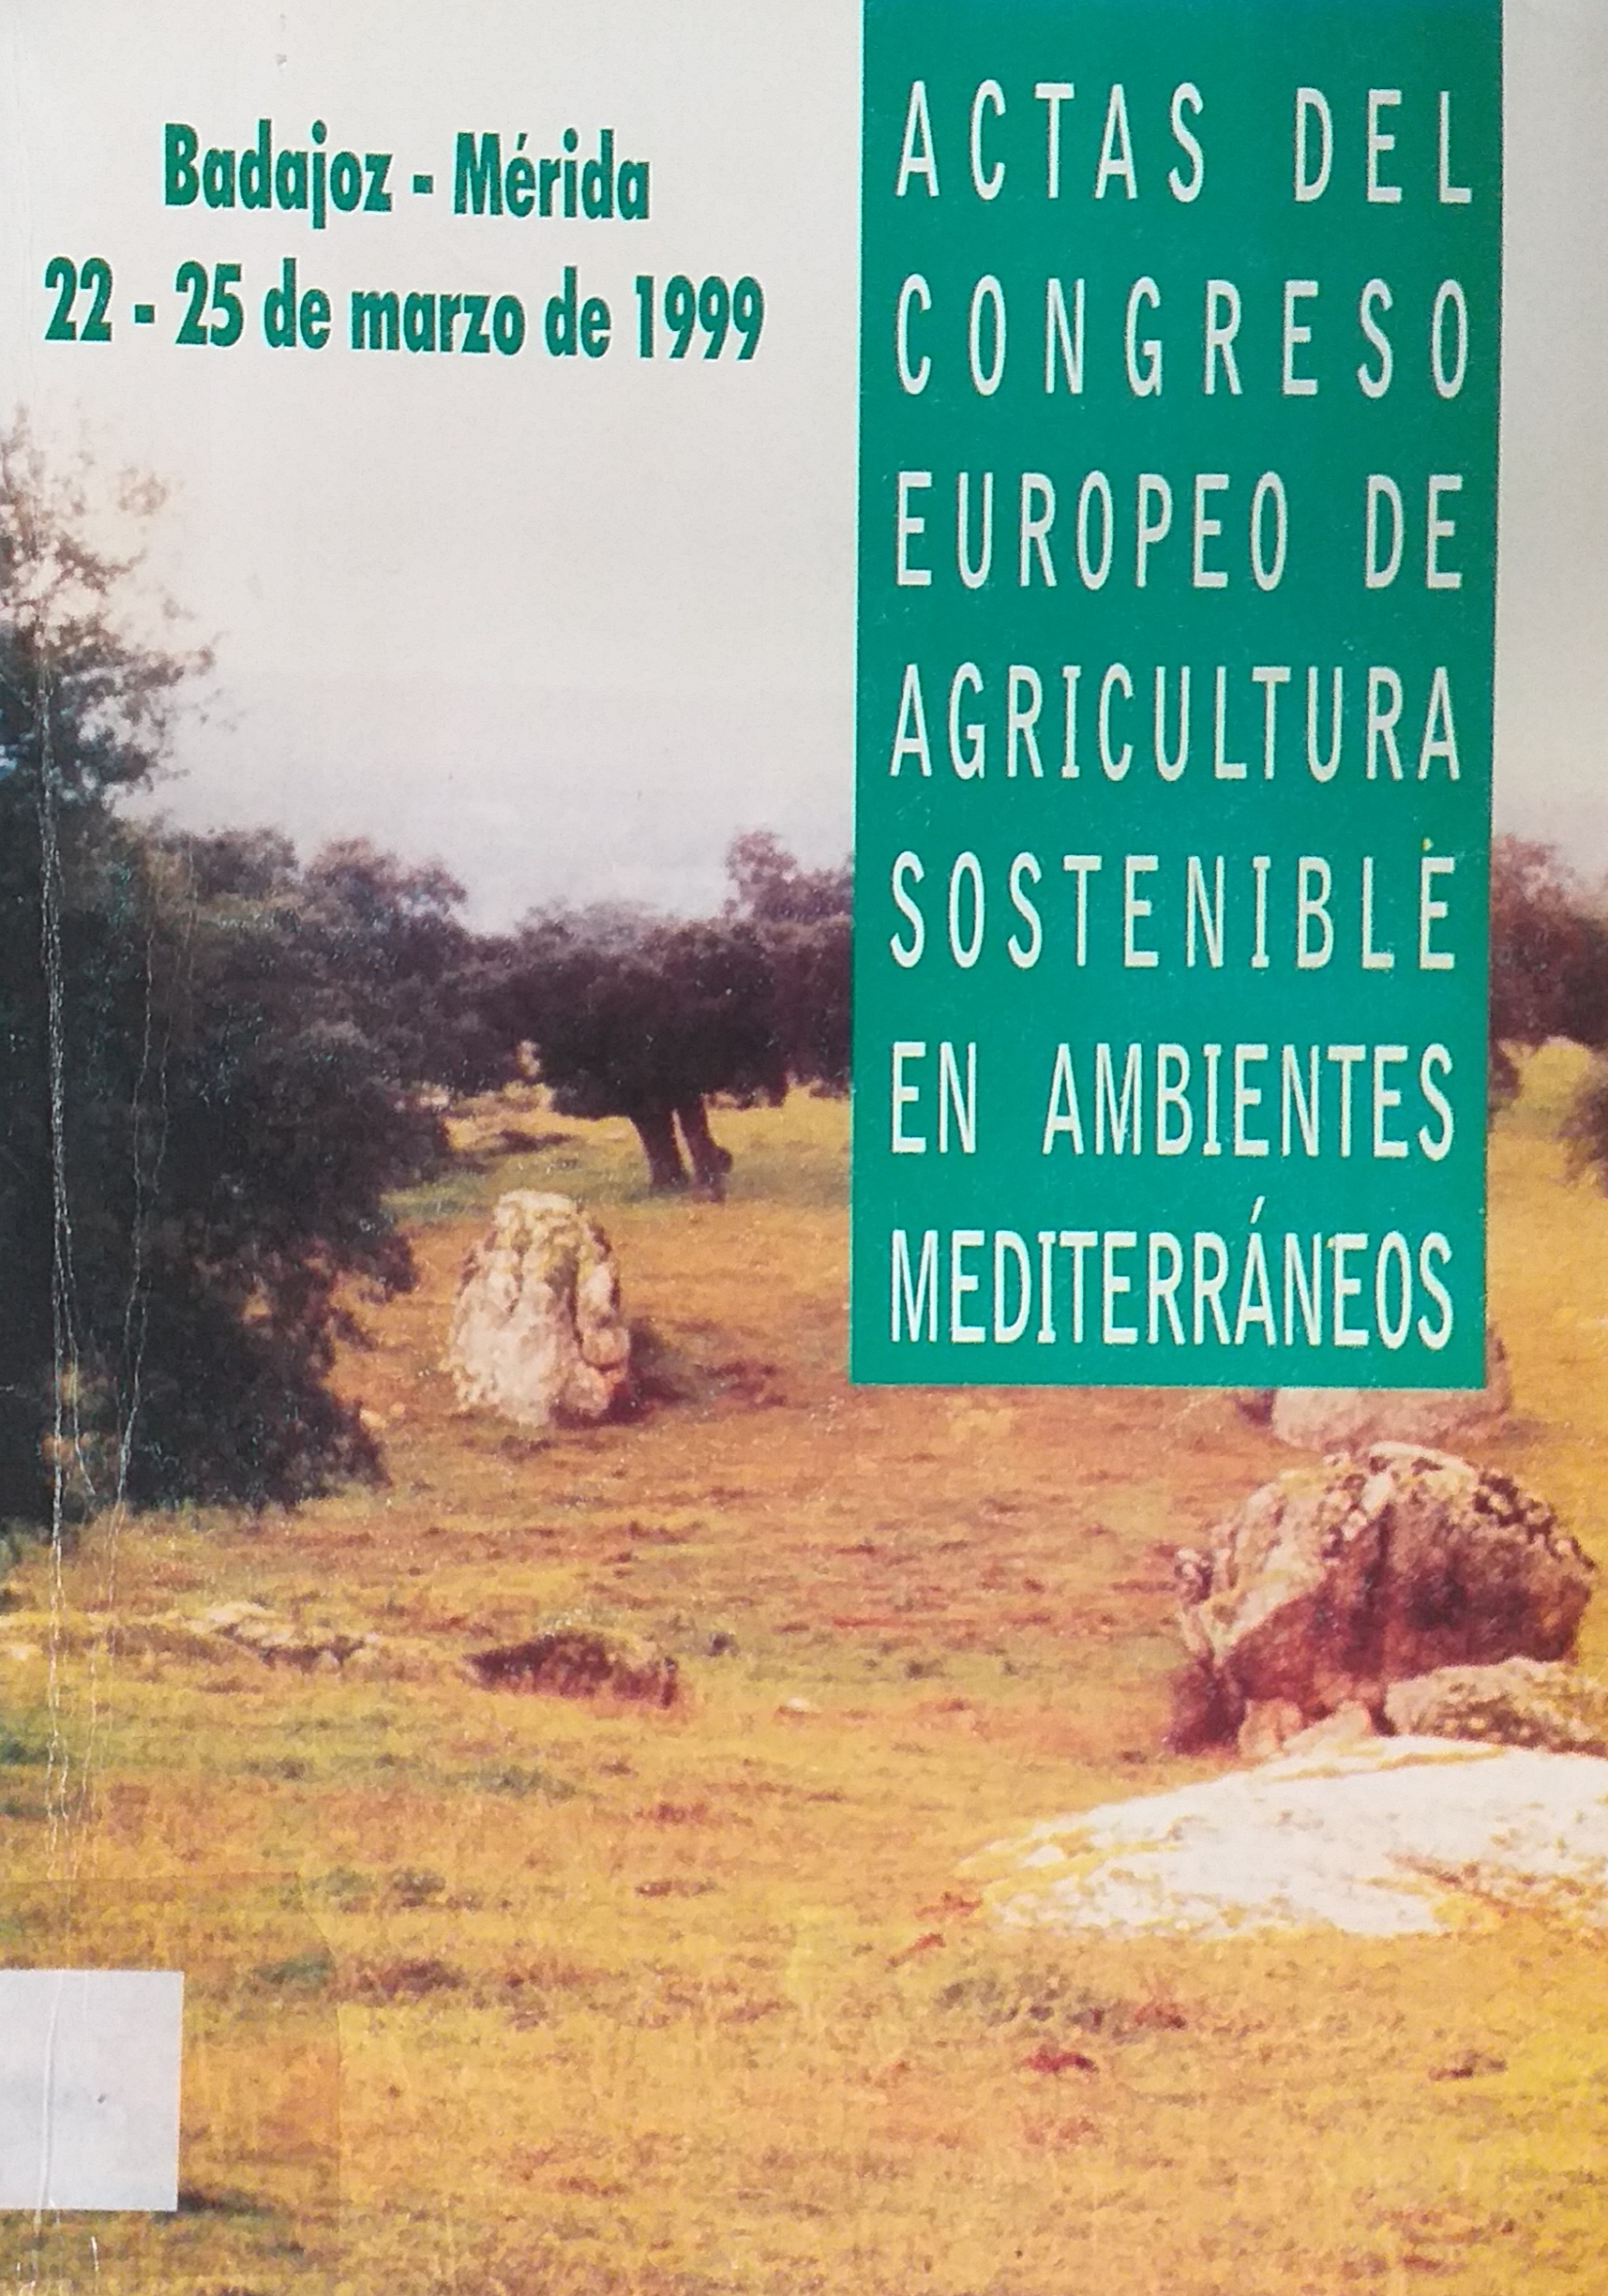 Imagen de portada del libro Actas del Congreso Europeo de Agricultura Sostenible en Ambientes Mediterráneos